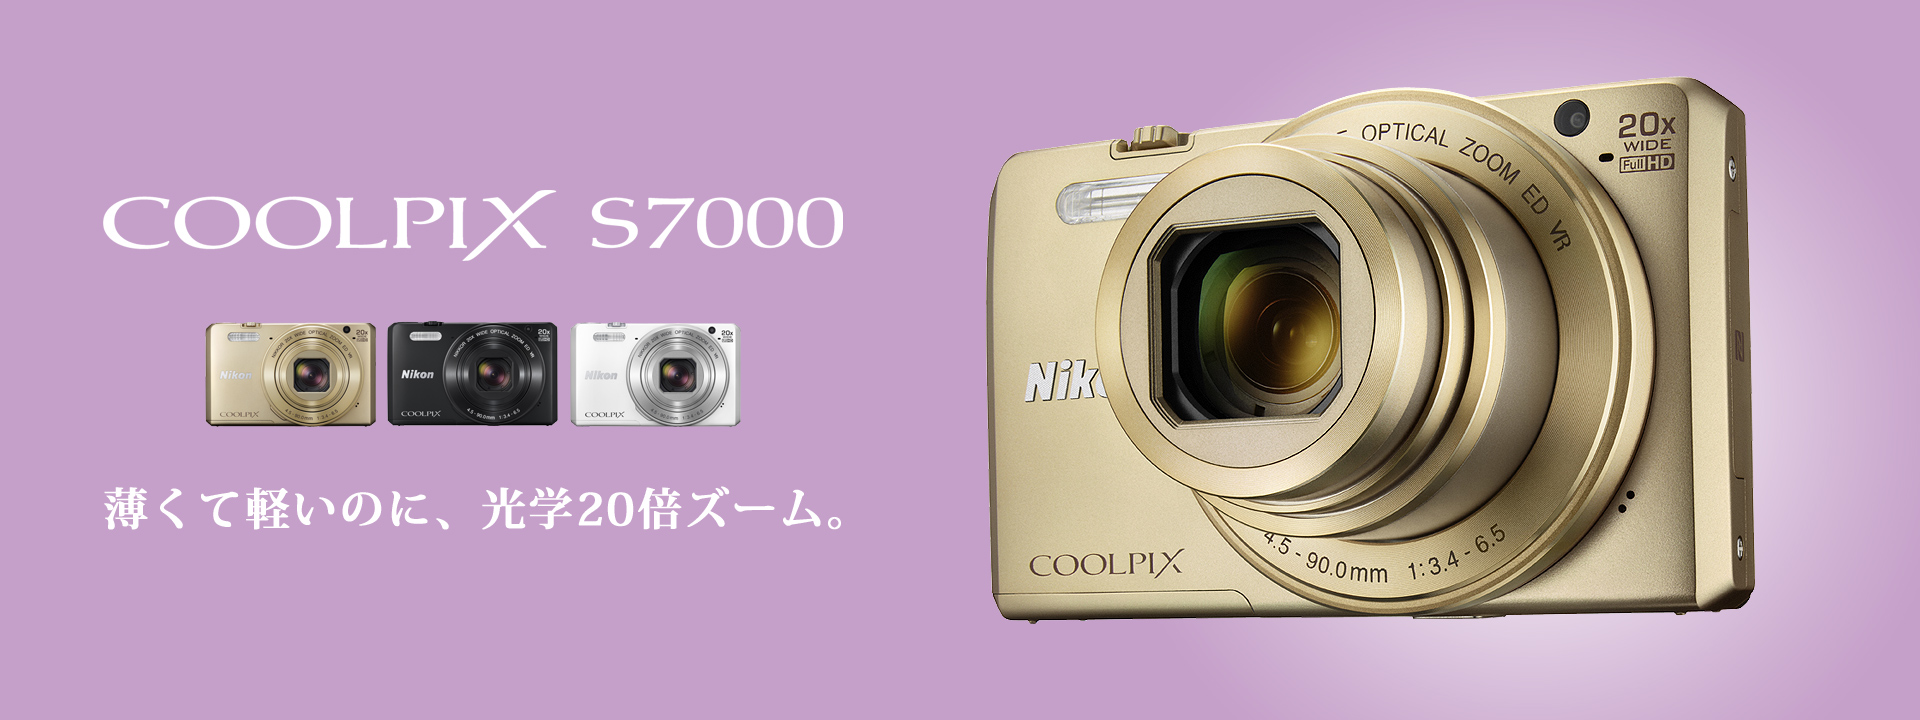 カメラ デジタルカメラ COOLPIX S7000 - 概要 | コンパクトデジタルカメラ | ニコンイメージング